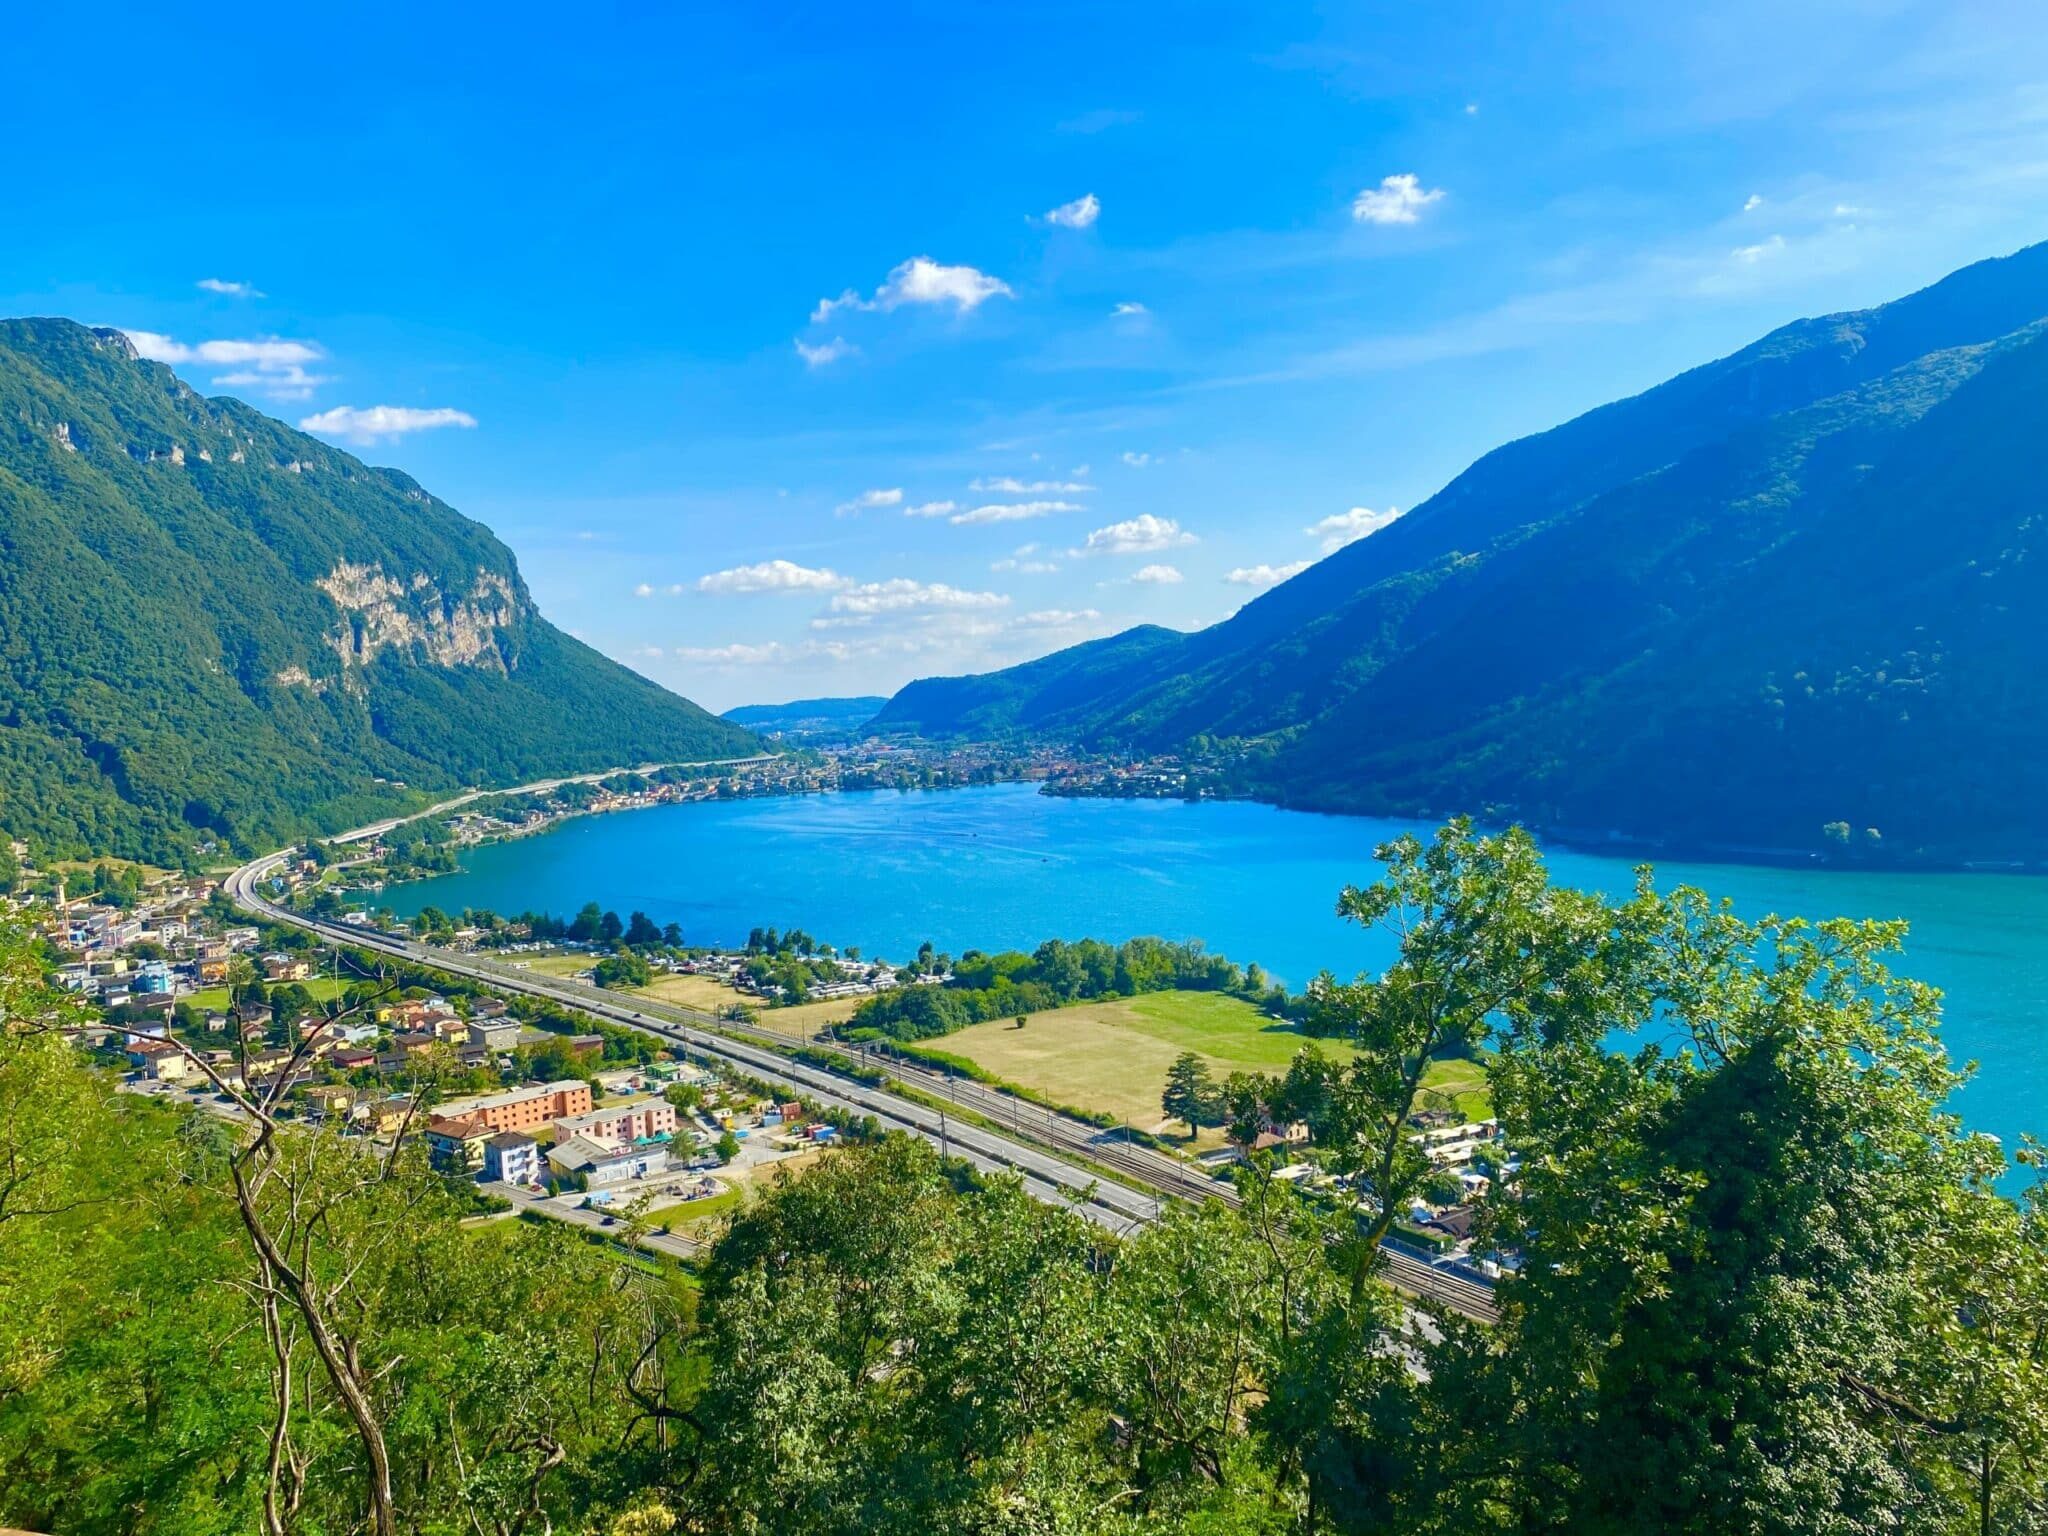 Ticino ( Swiss Italian) and Milan weekend trip July 2020